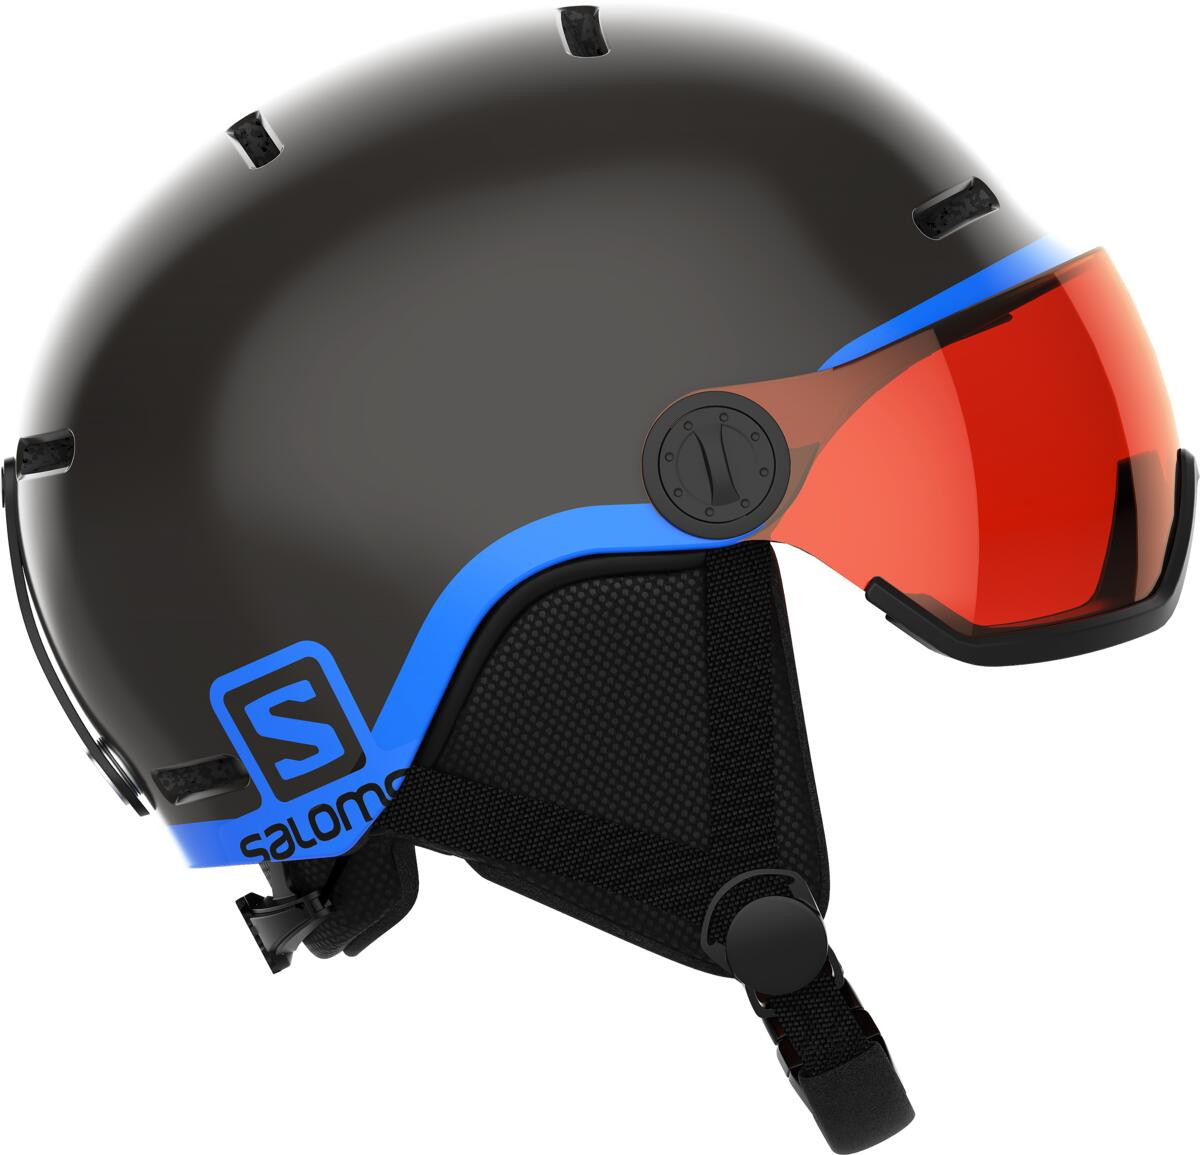 juniorsrká lyžařská helma Salomon Grom Visor